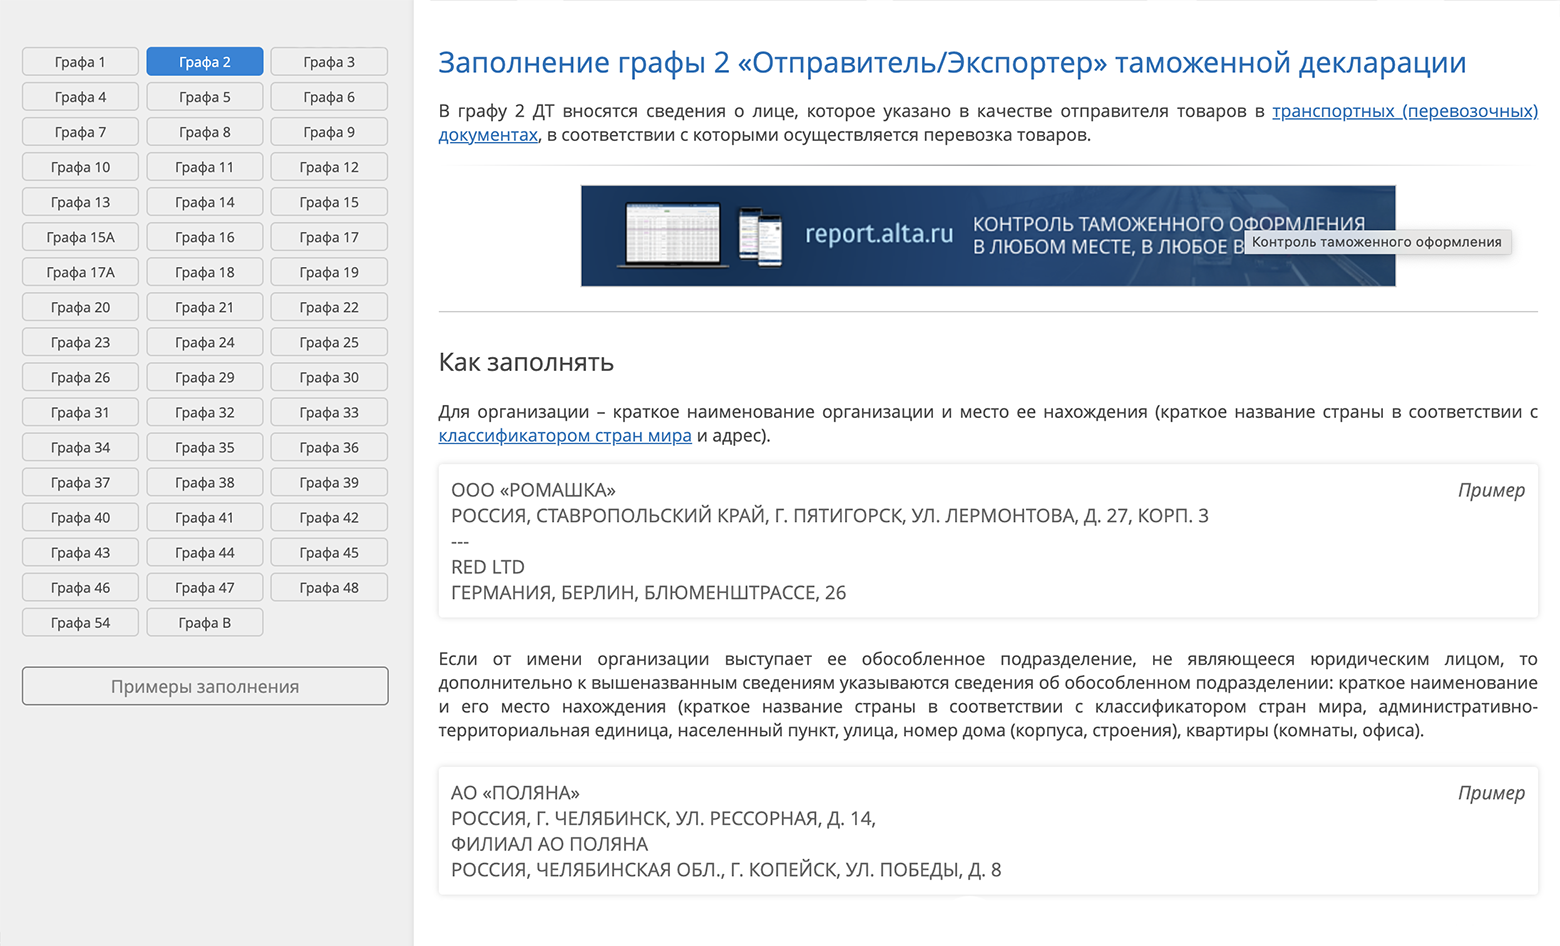 А если кликнуть на графу, перейдете в ее описание и инструкцию по заполнению. Источник: alta.ru